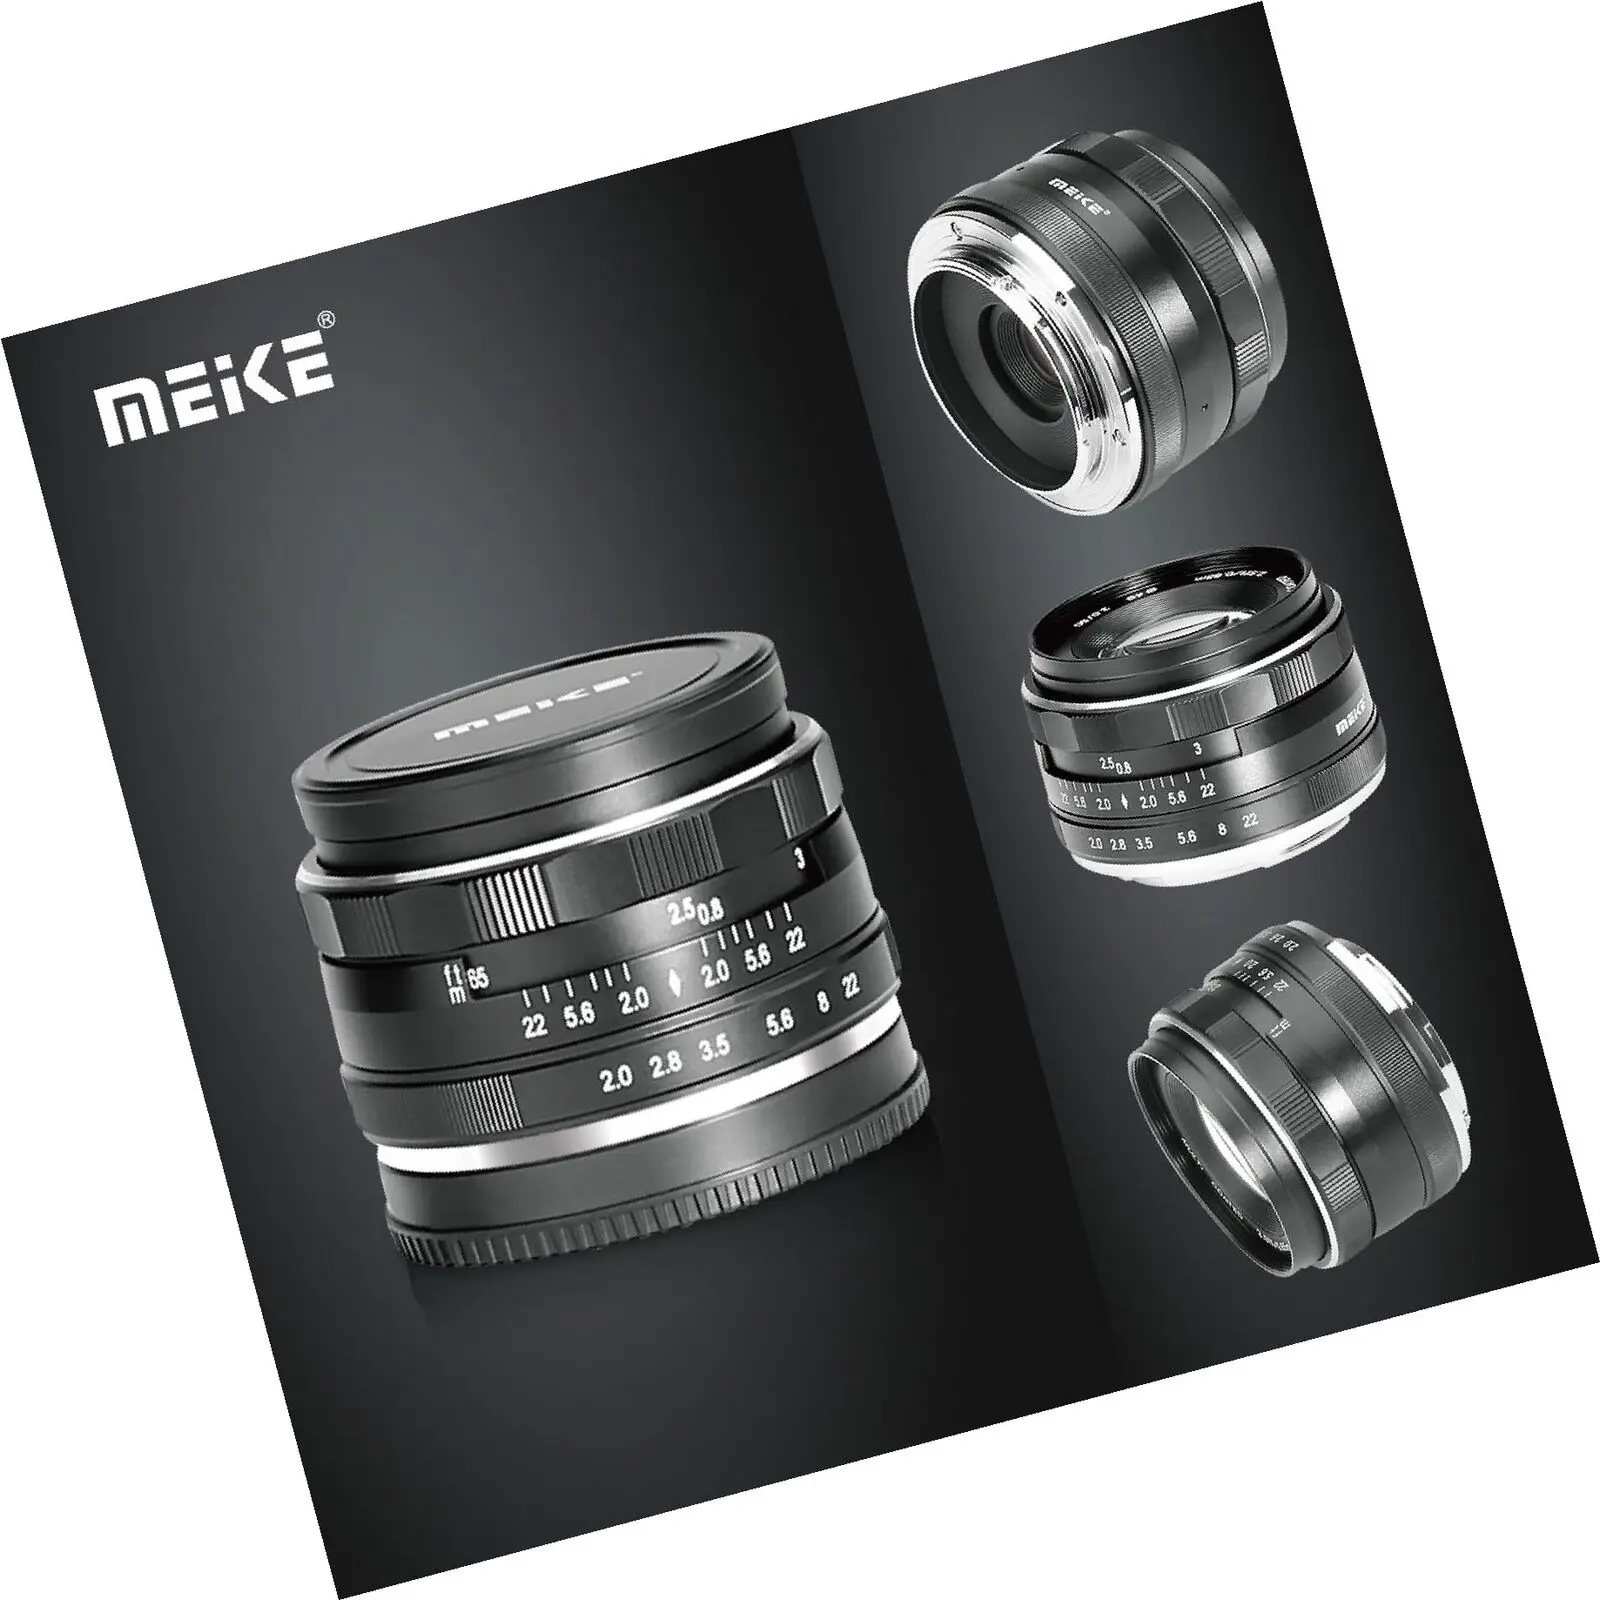 

Meike MK 50mm f2.0 manual focus large aperture APS-C lens for Sony A6500/A6300/A6000/A5100/A5000/NEX7/NEX6/NEX5/NEX3 Cameras